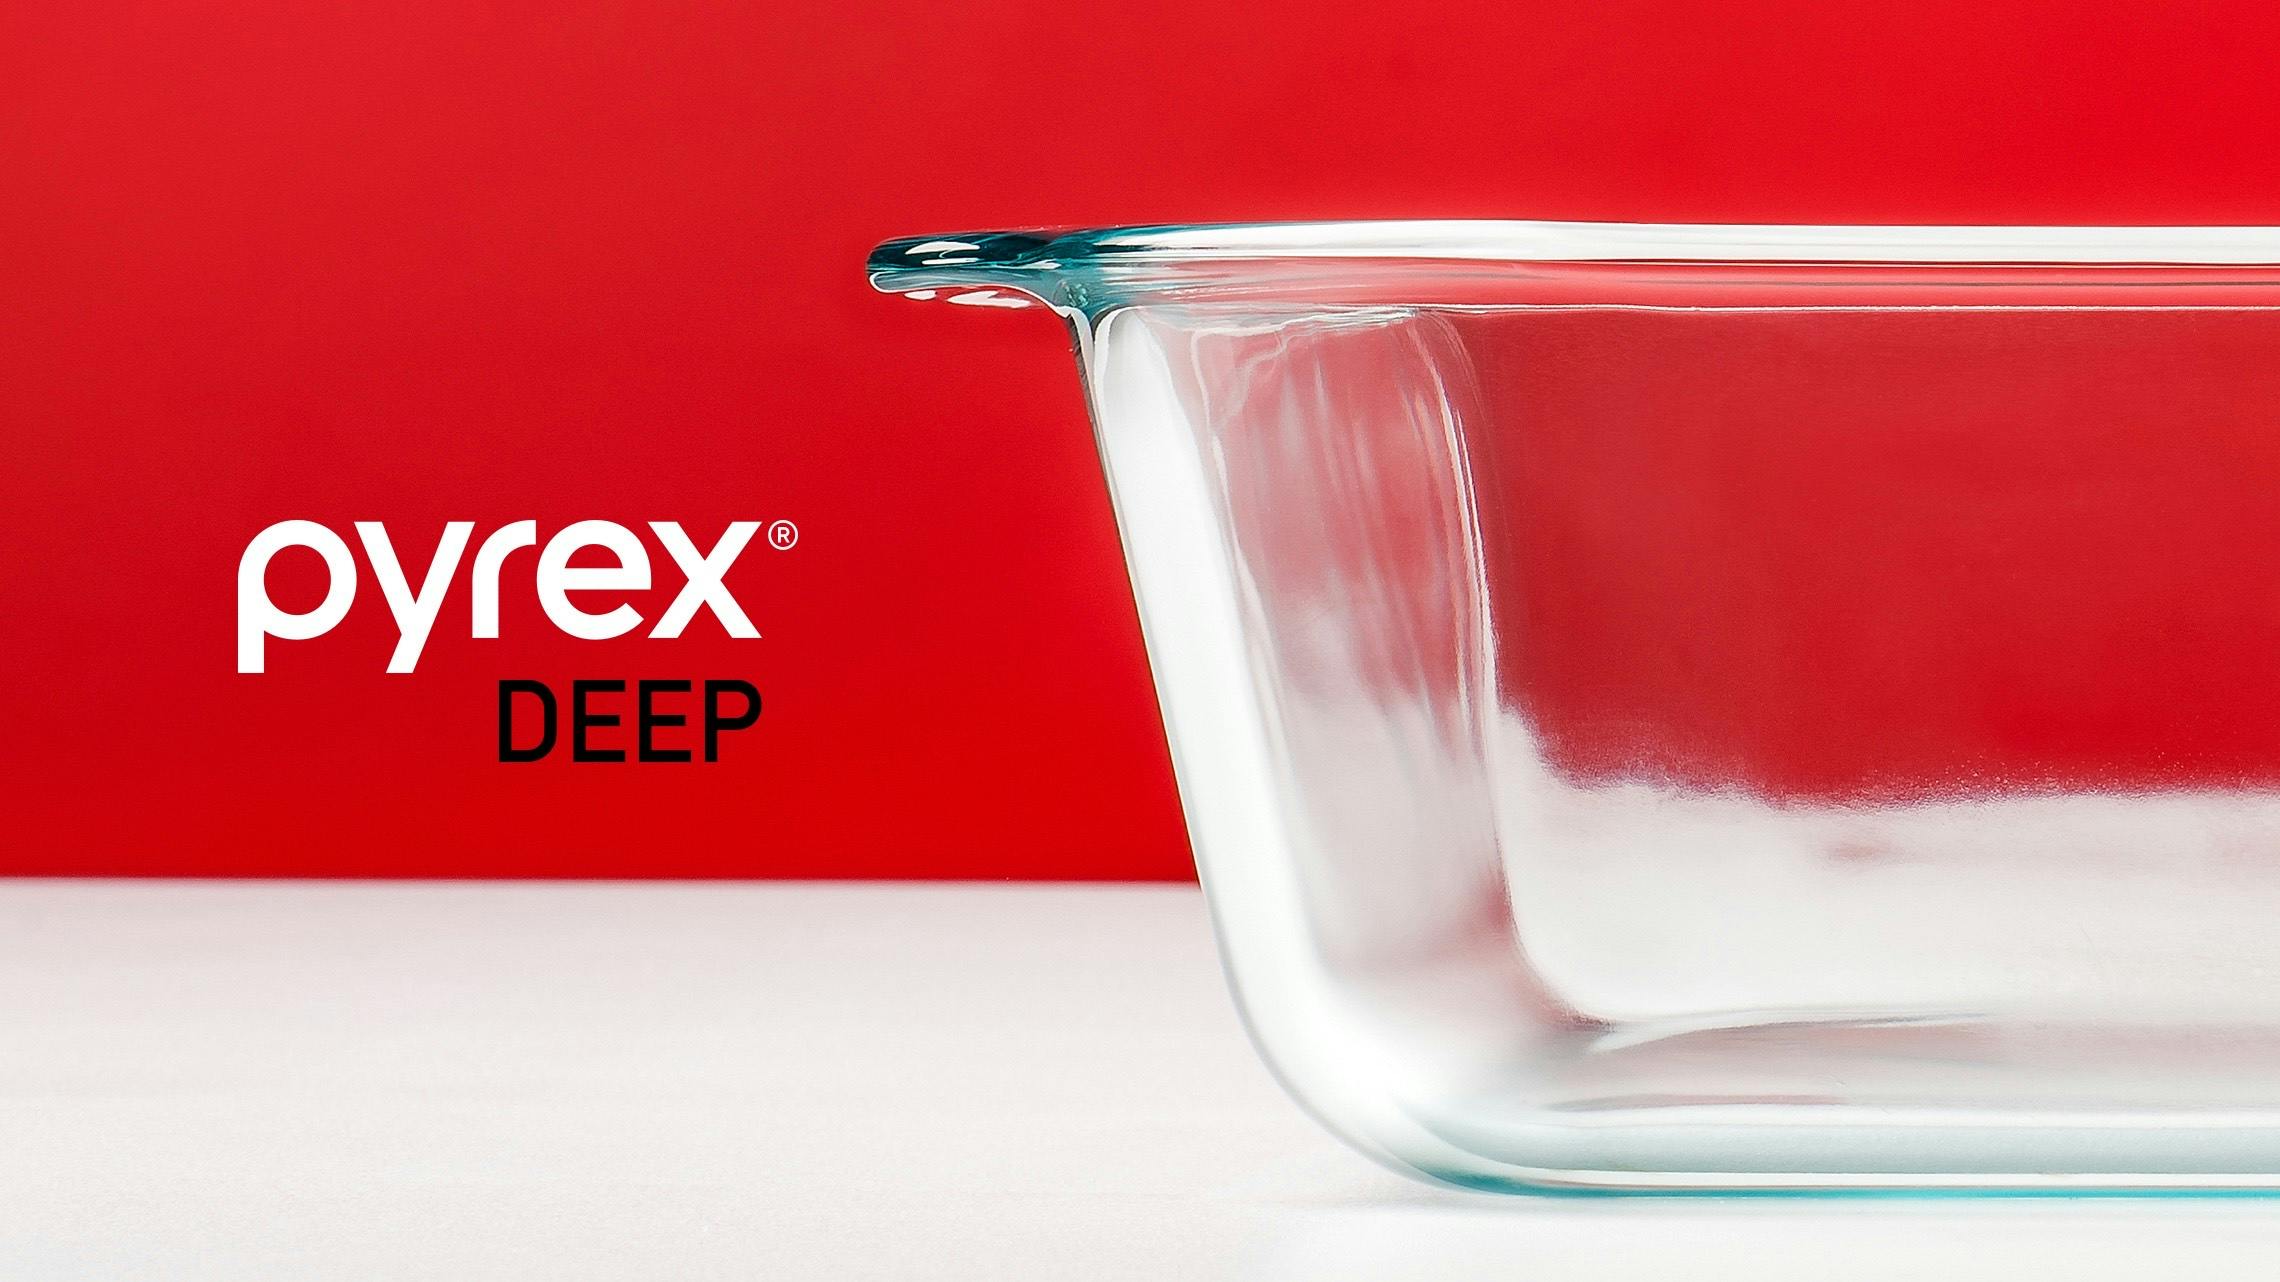 Photograph of a Pyrex Deep dish.